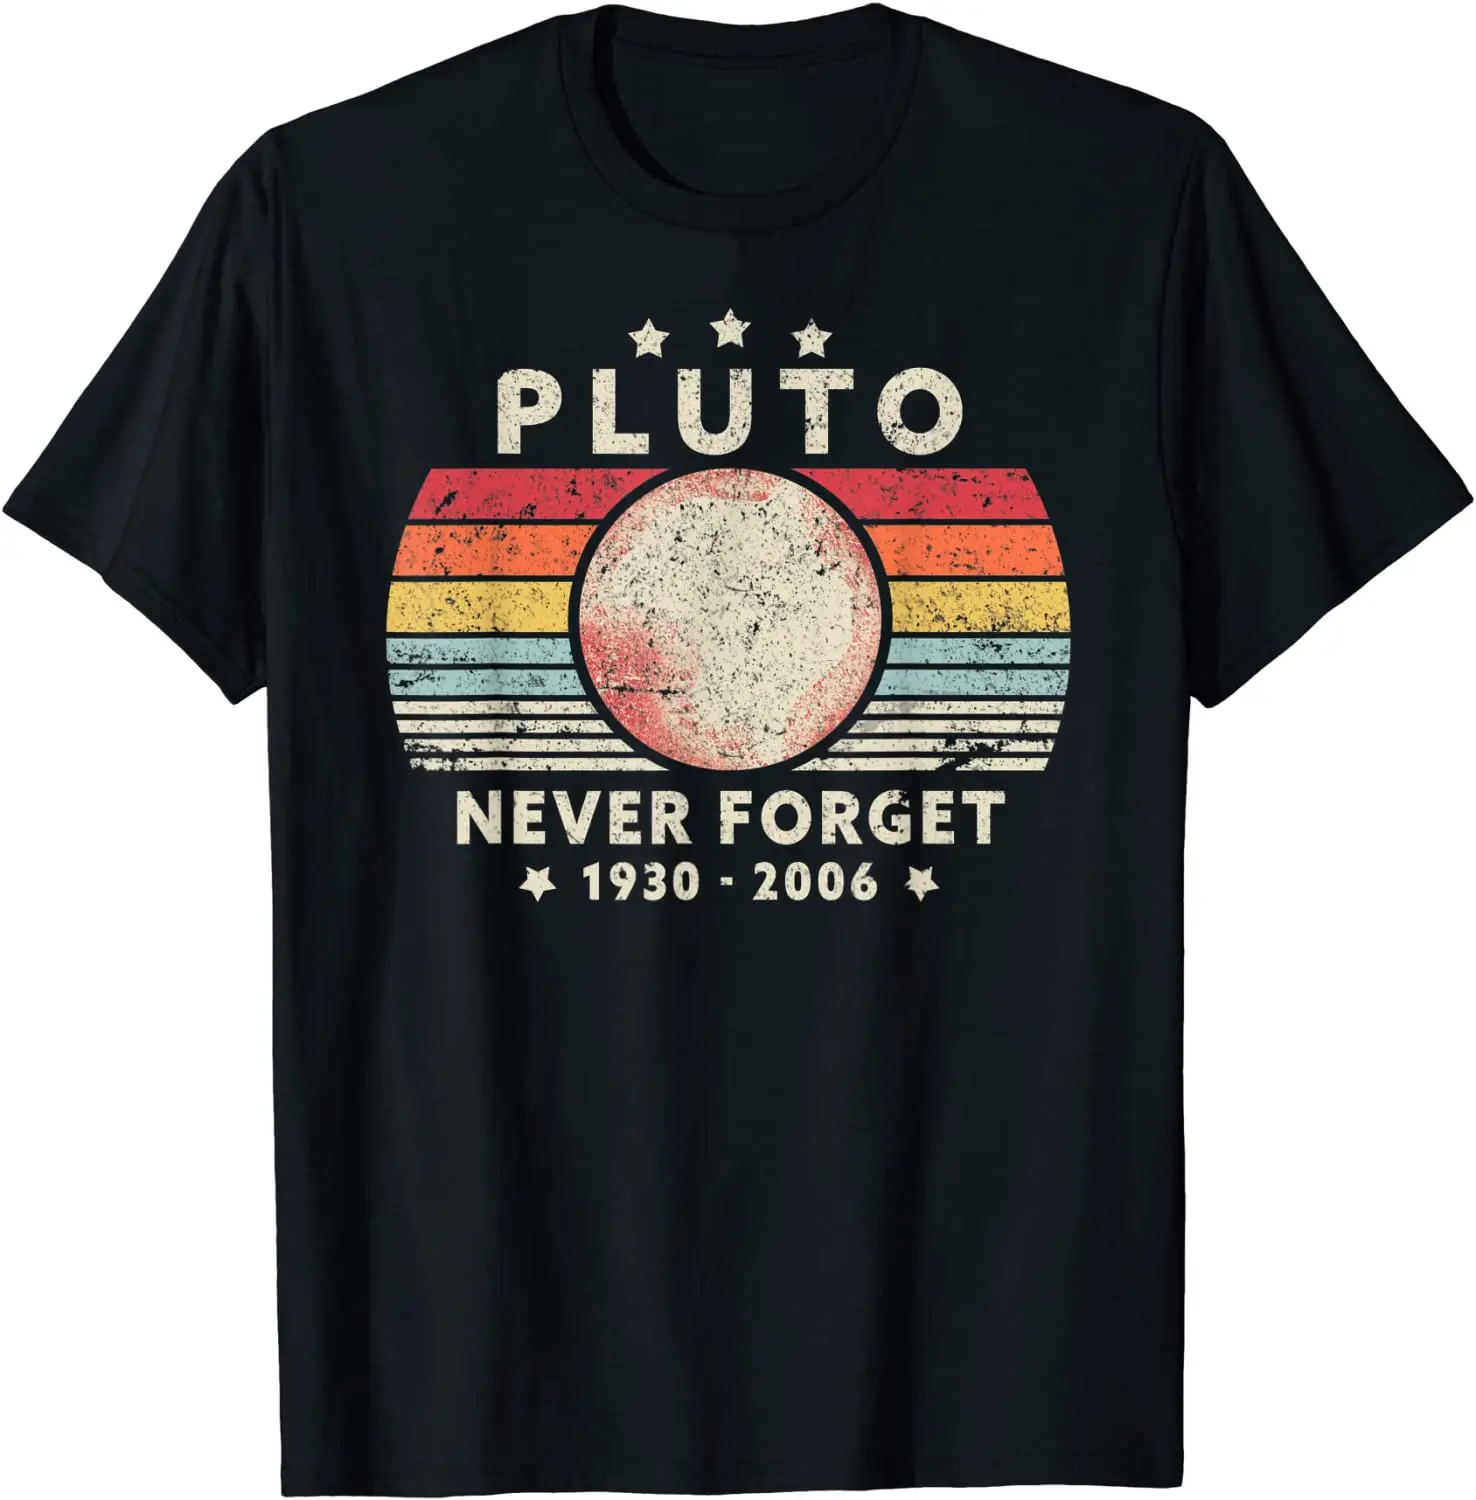 

Никогда не забывайте о рубашке Pluto. Футболка в стиле ретро с забавным космосом